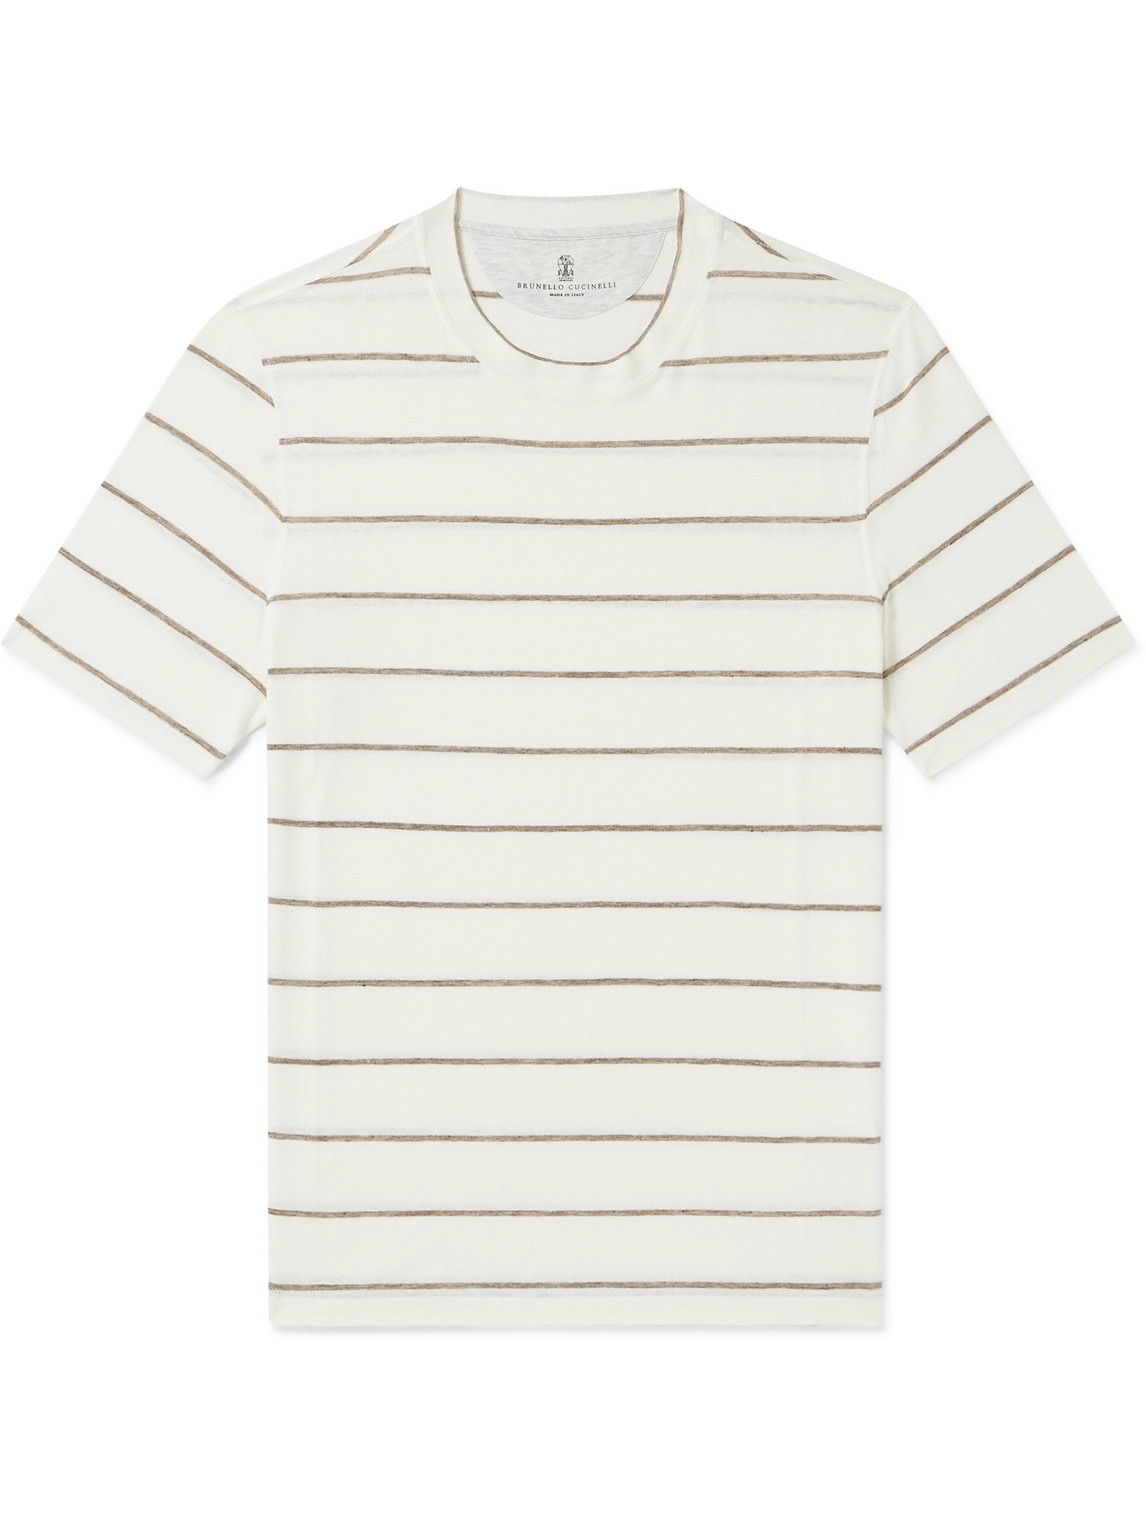 Brunello Cucinelli - Striped Linen and Cotton-Blend T-Shirt - Men - Neutrals - XL von Brunello Cucinelli